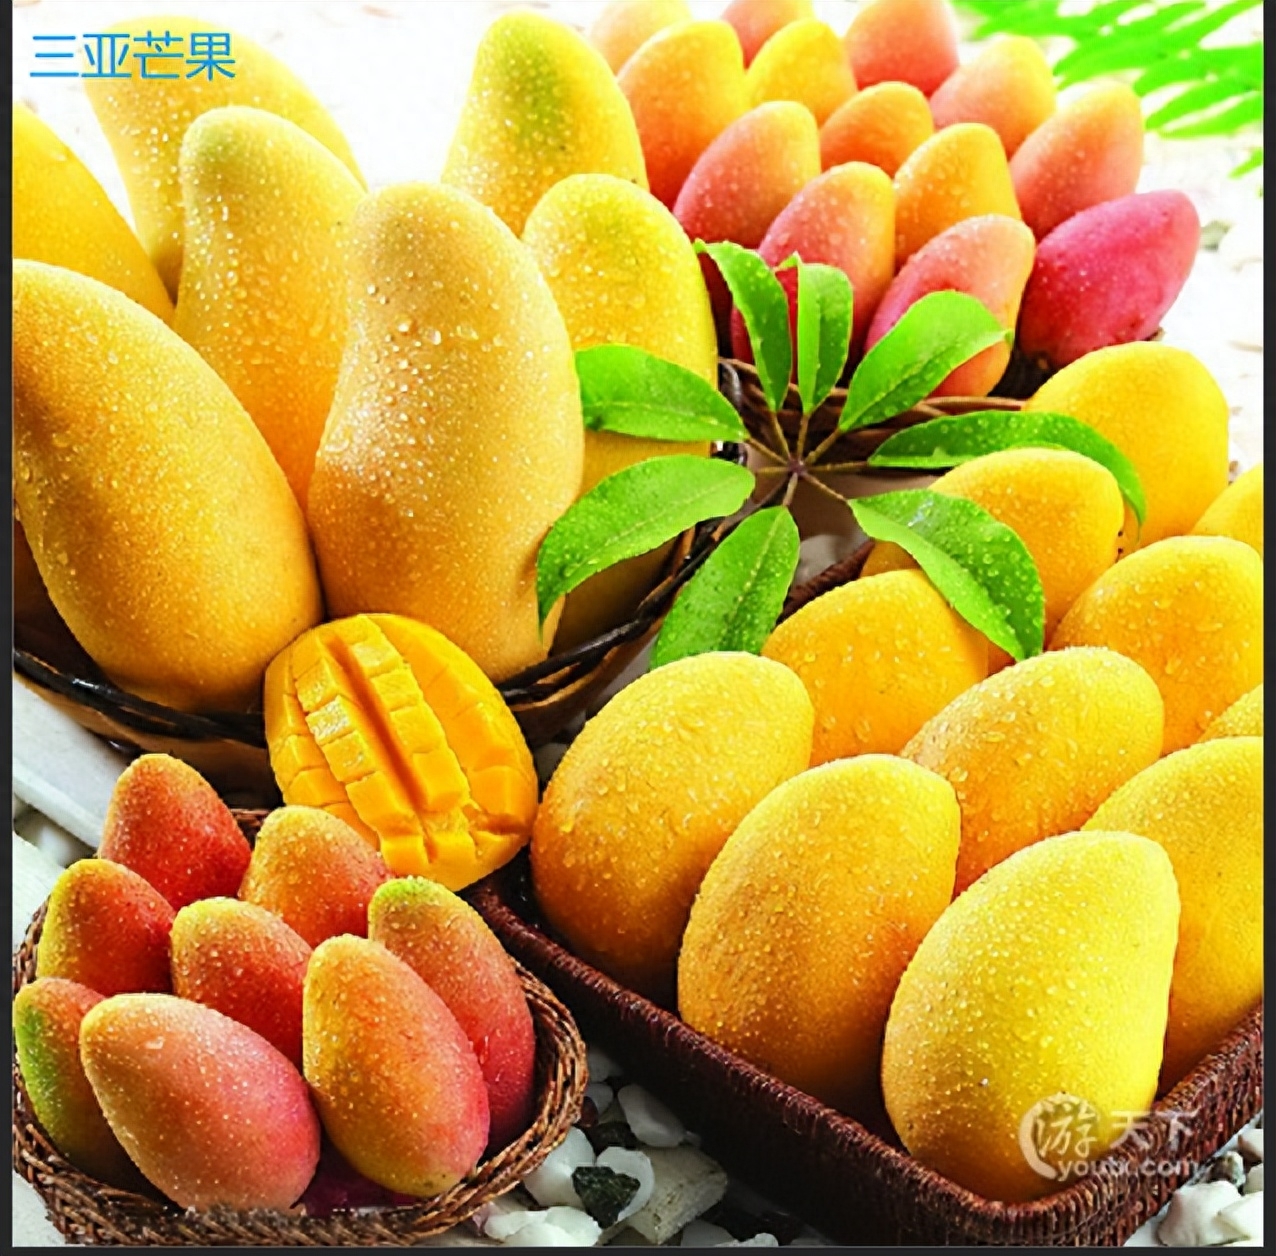 海南特色热带农特产品代表解读，火山口荔枝、文昌椰子等重点介绍！